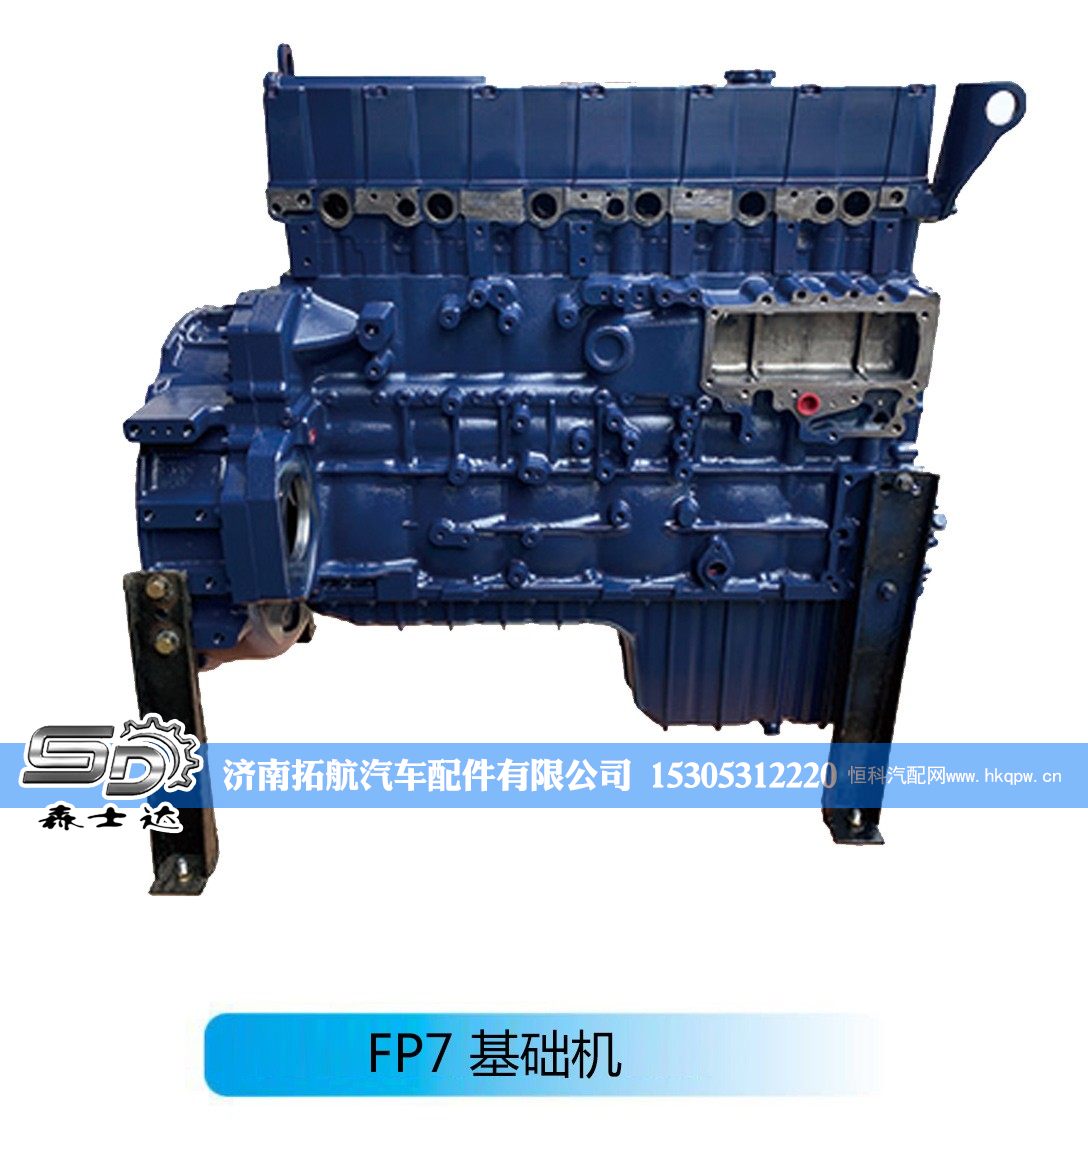 潍柴系列柴油发动机--FP7 基础机【森士达】/